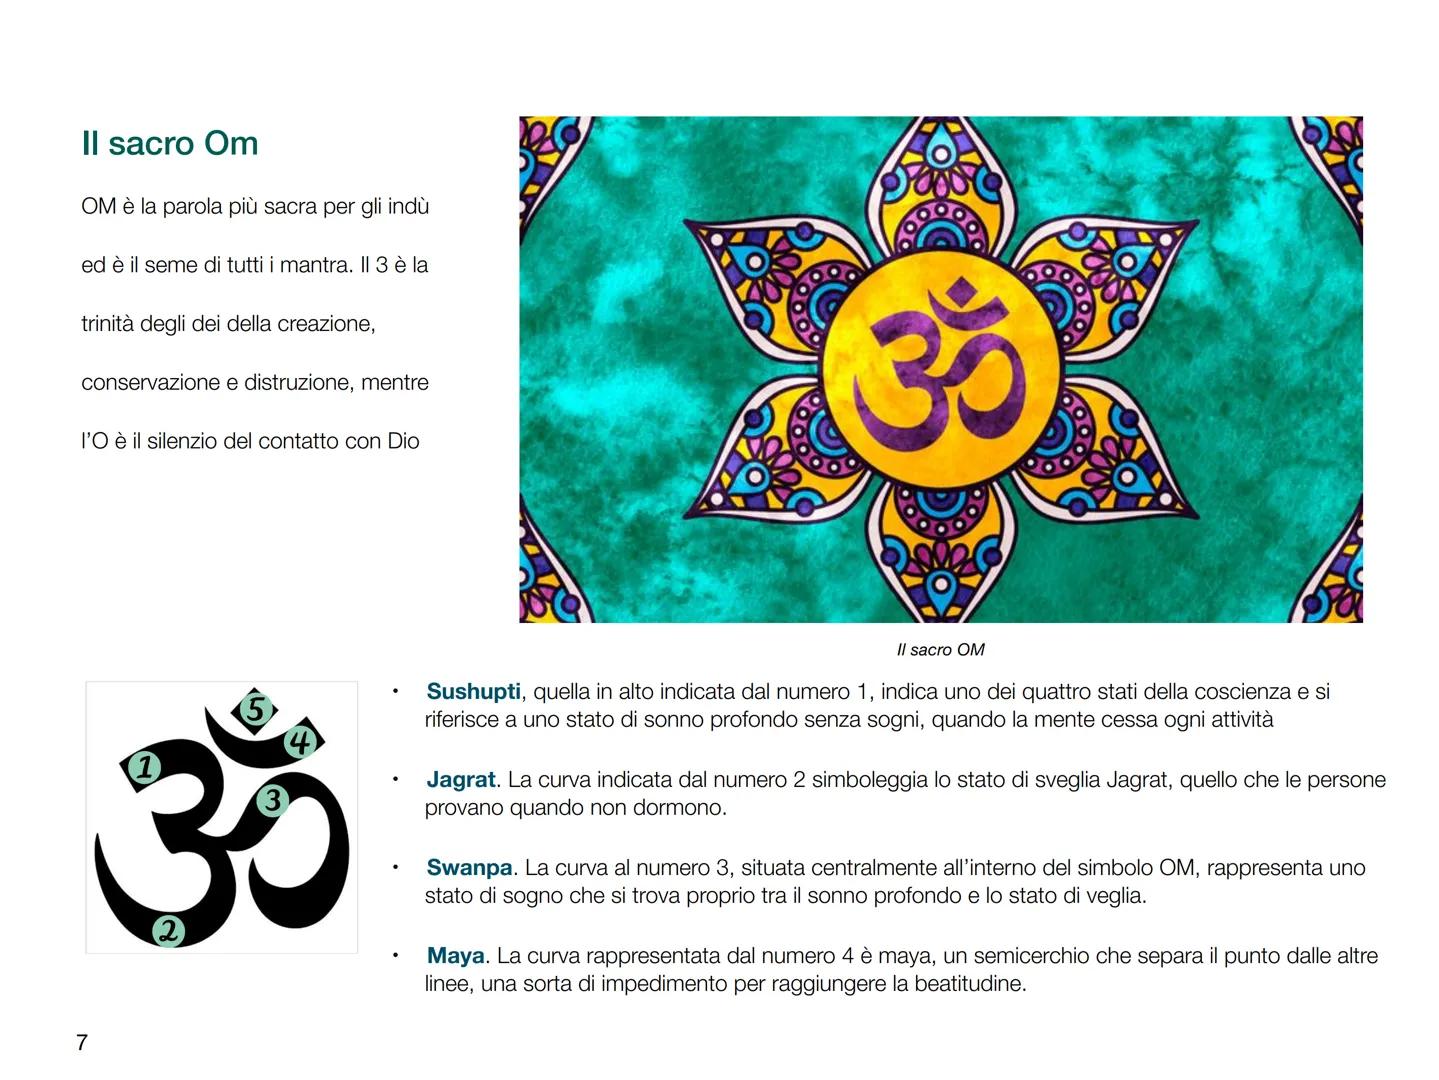 
<p>L'induismo è una religione monoteista con un'unica divinità chiamata Brahman, lo spirito assoluto, che può essere adorato in molte forme